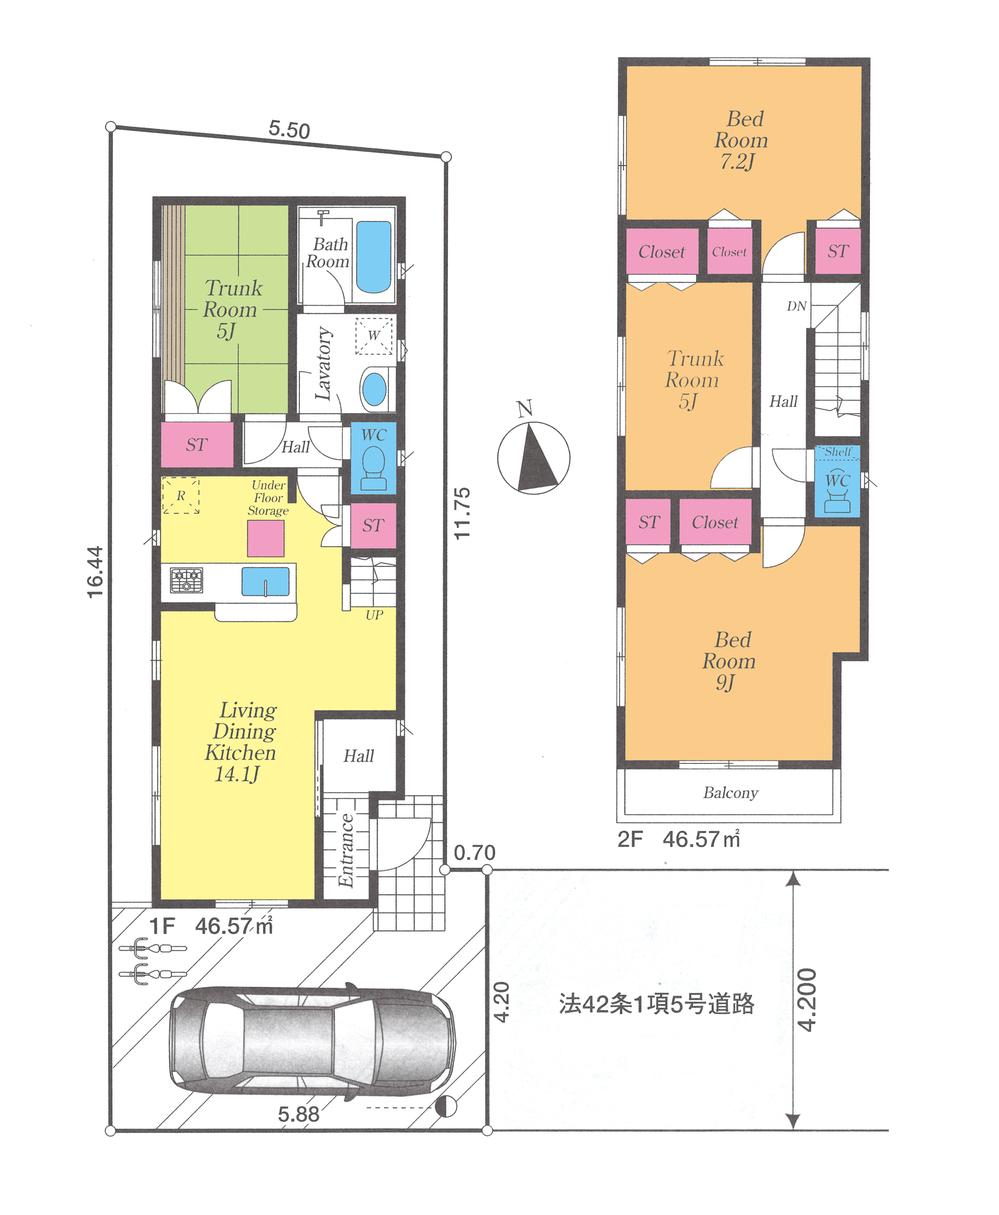 Floor plan. 39,800,000 yen, 4LDK, Land area 91.68 sq m , Building area 93.14 sq m floor plan